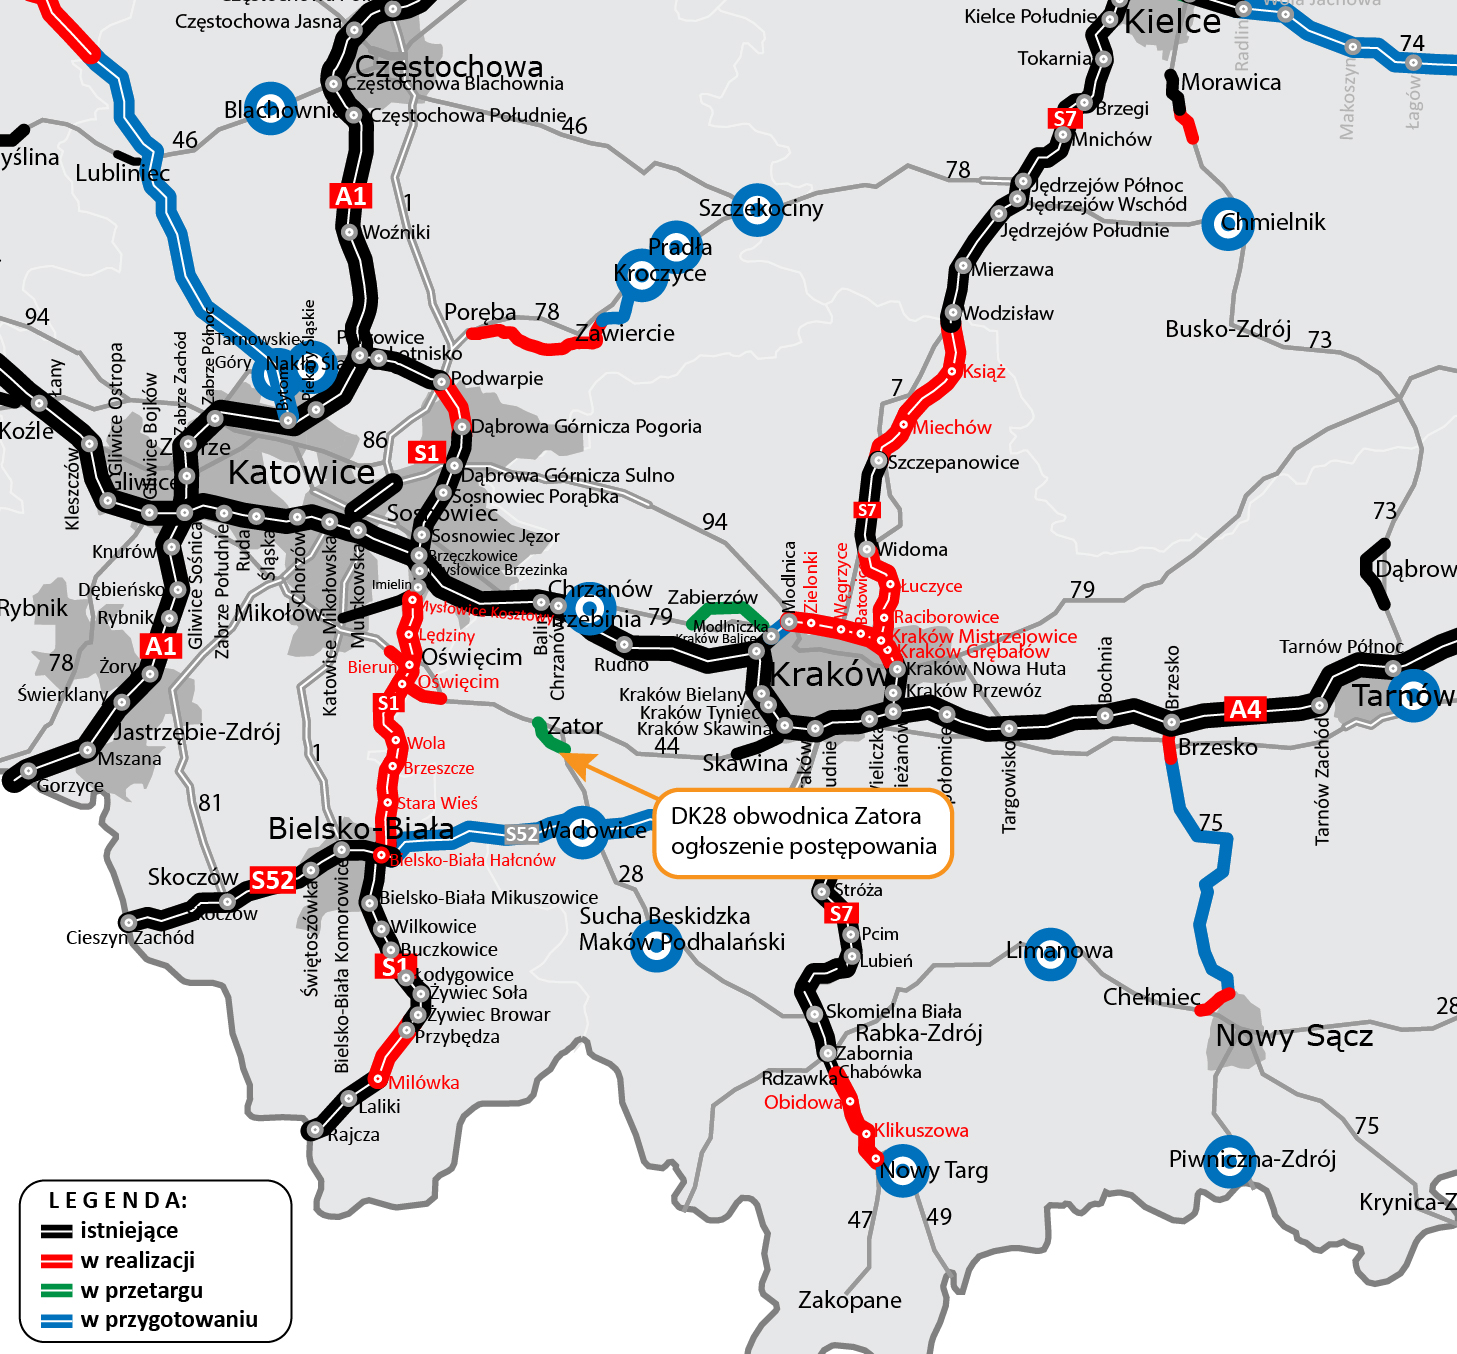 mapa przedstawiająca schematy dróg istniejących, budowanych i planowanych do wybudowania w województwach małopolskim i śląskim